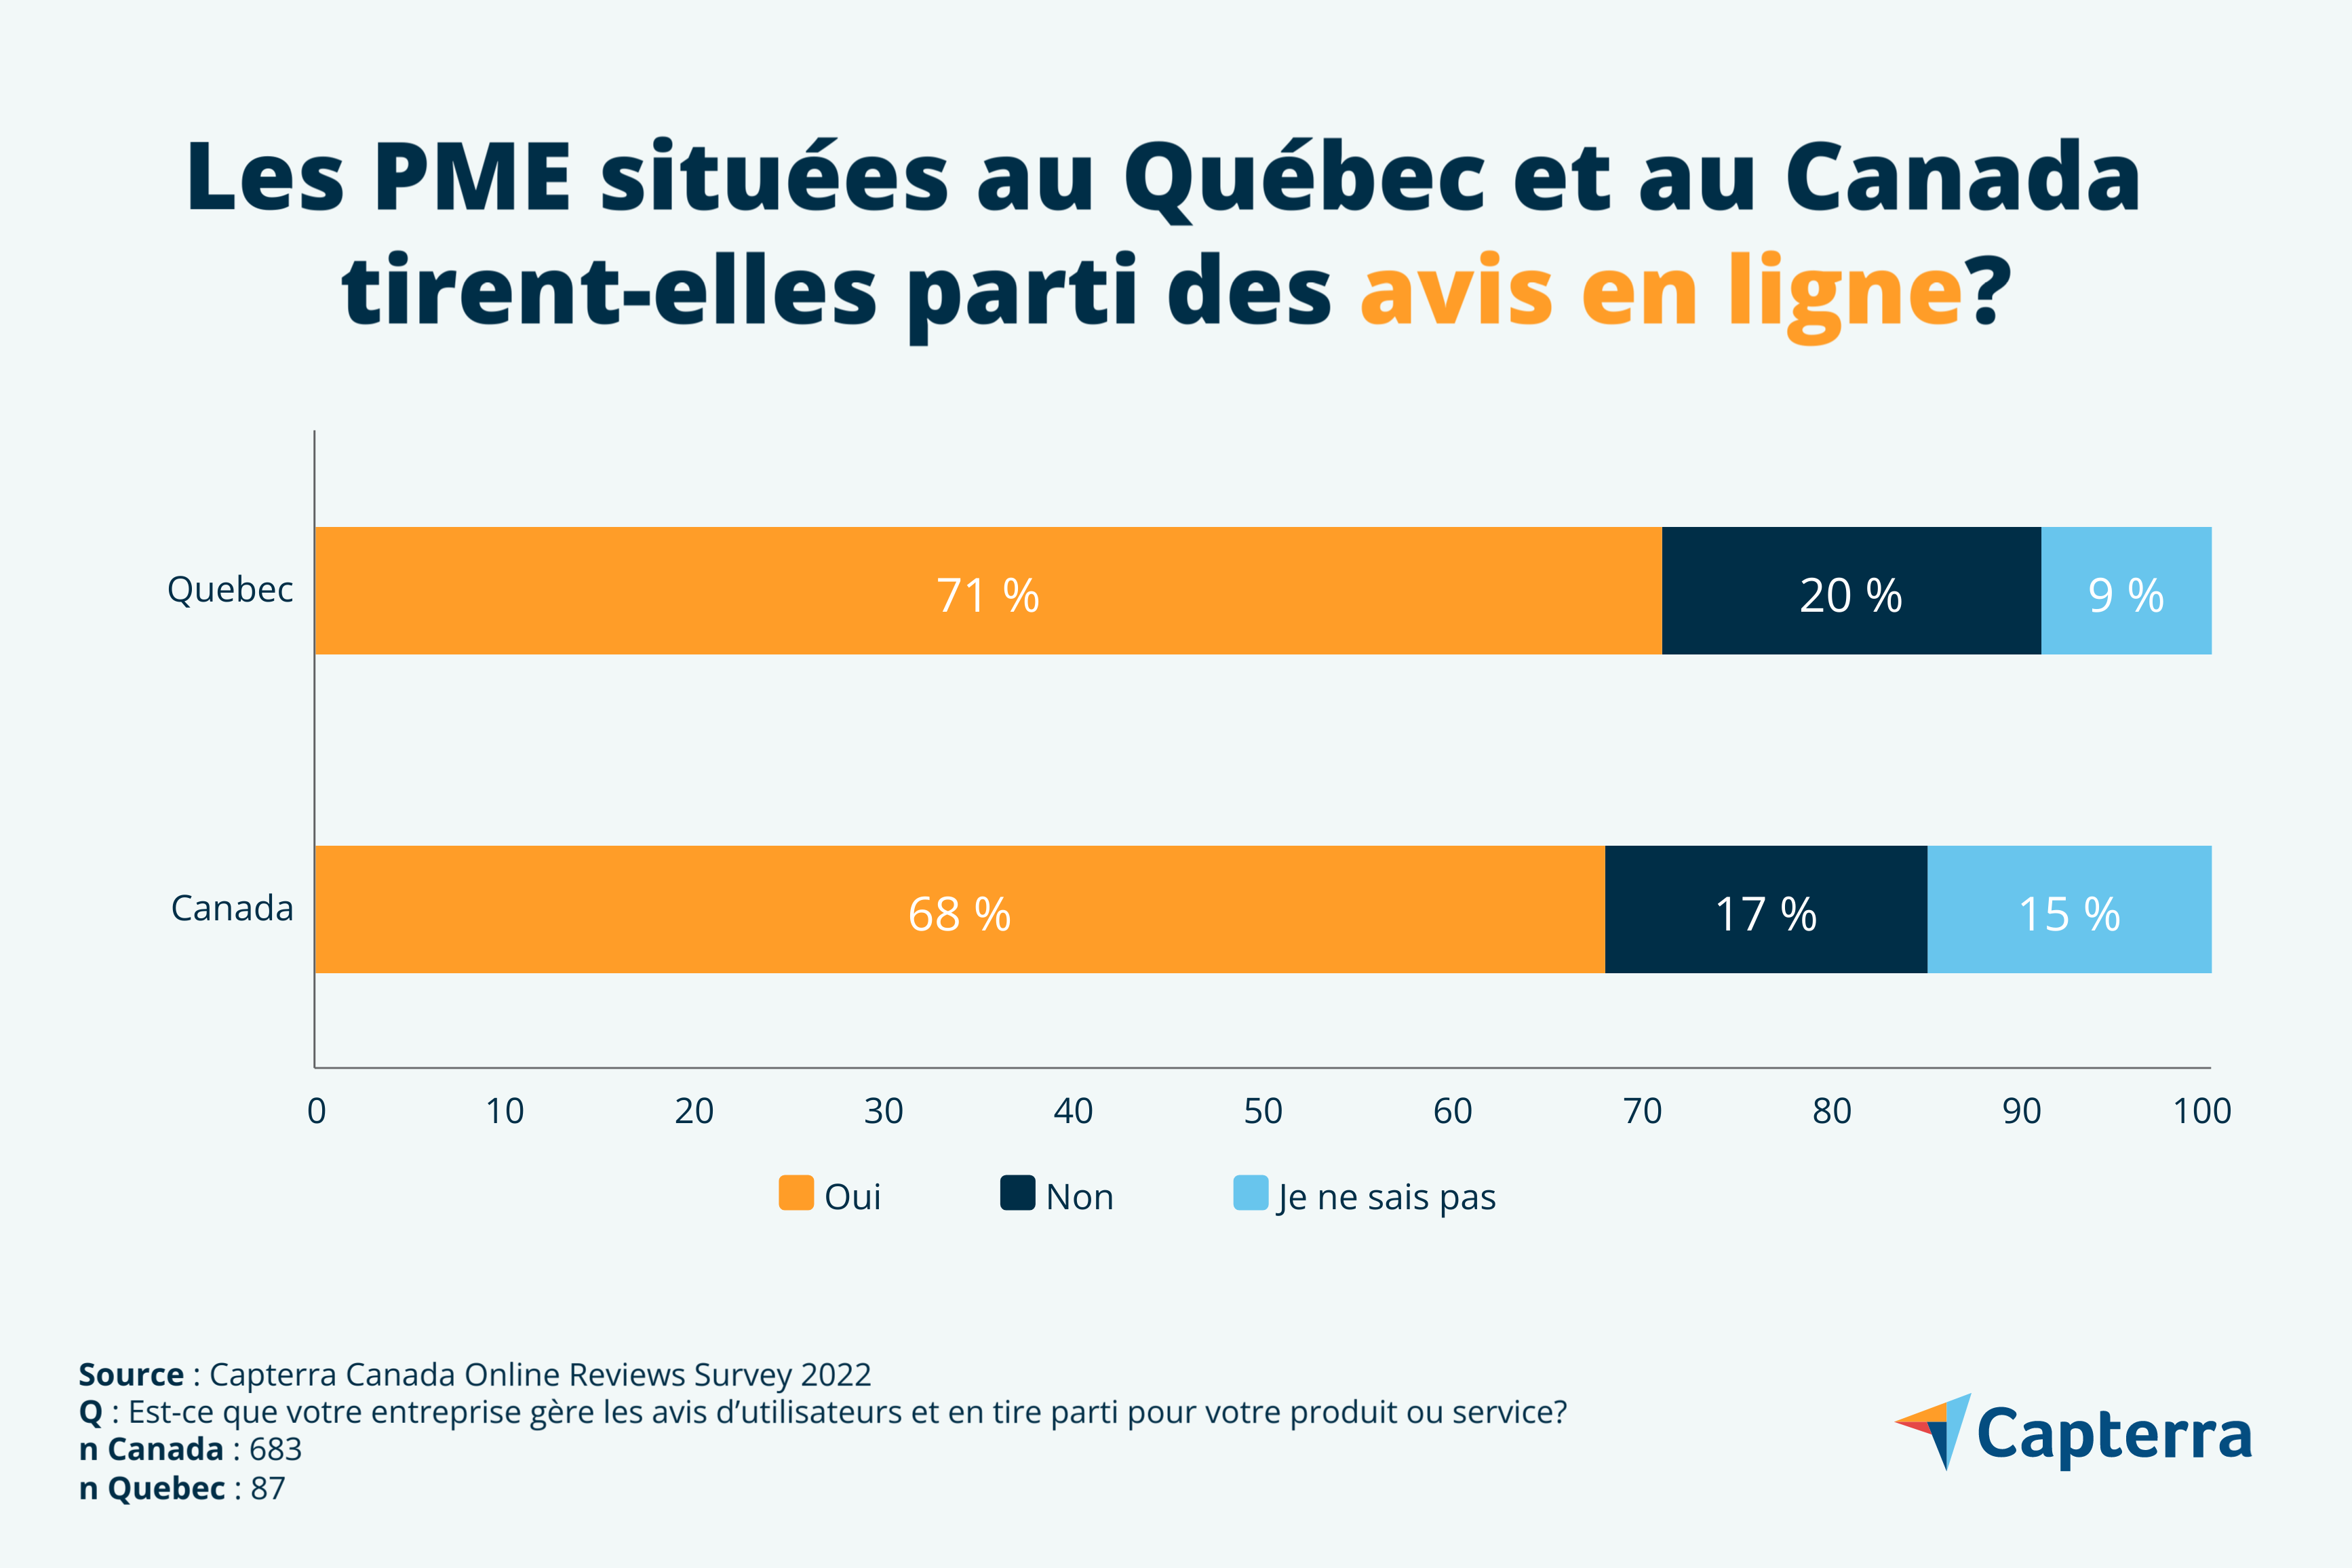 Les PME situées au Québec et au Canada tirent-elles parti des avis en ligne?